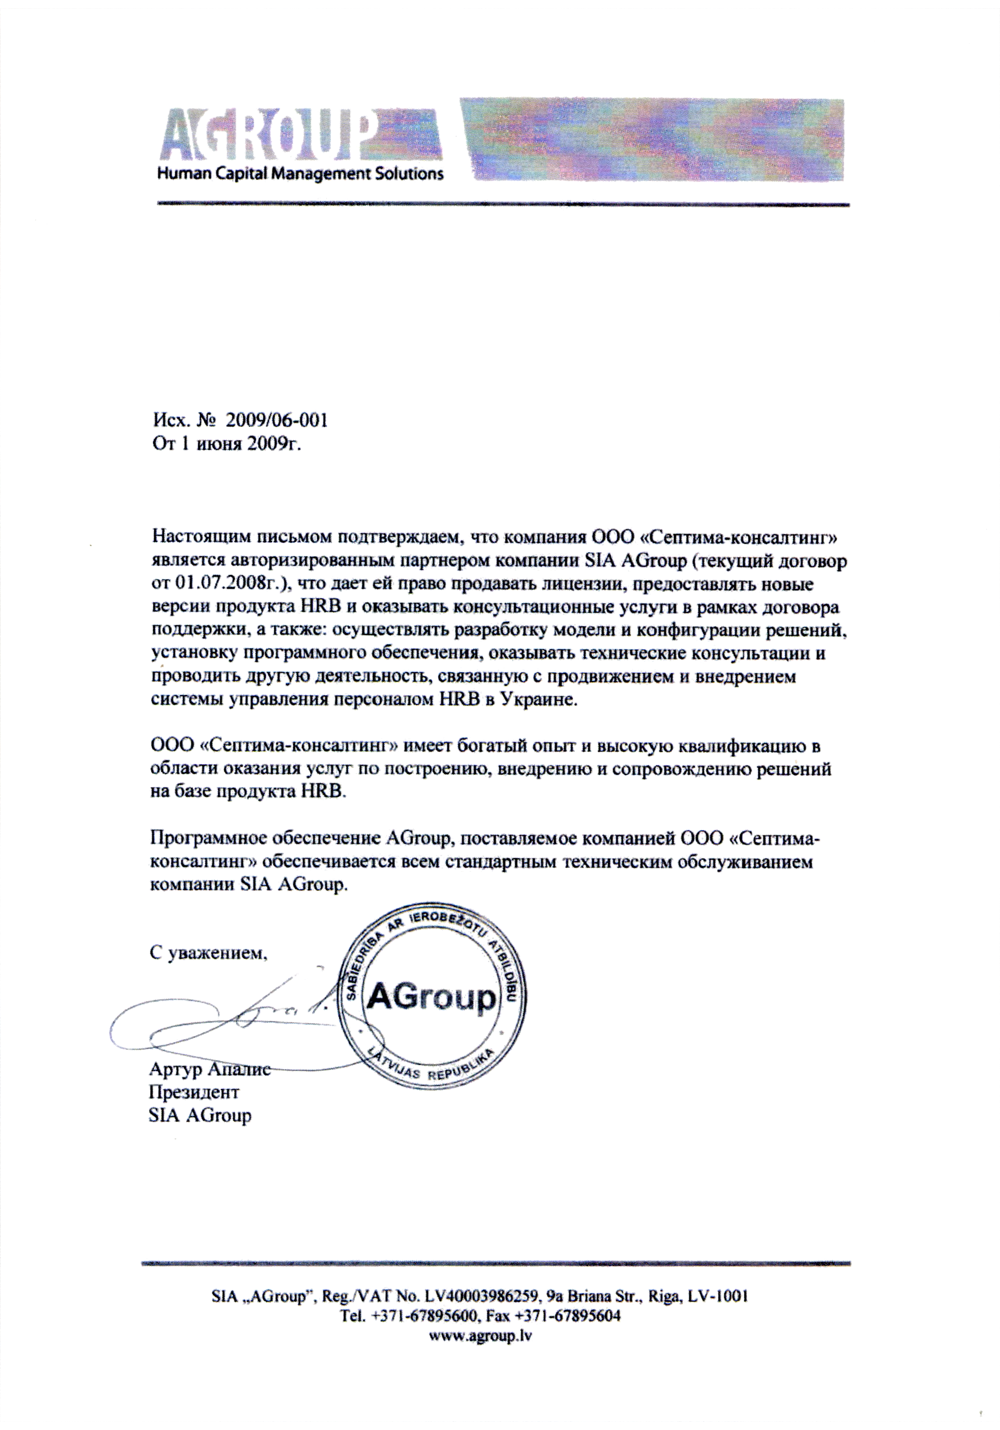 Рекомендательноe письмо SIA AGroup, Июнь, 2009 г.